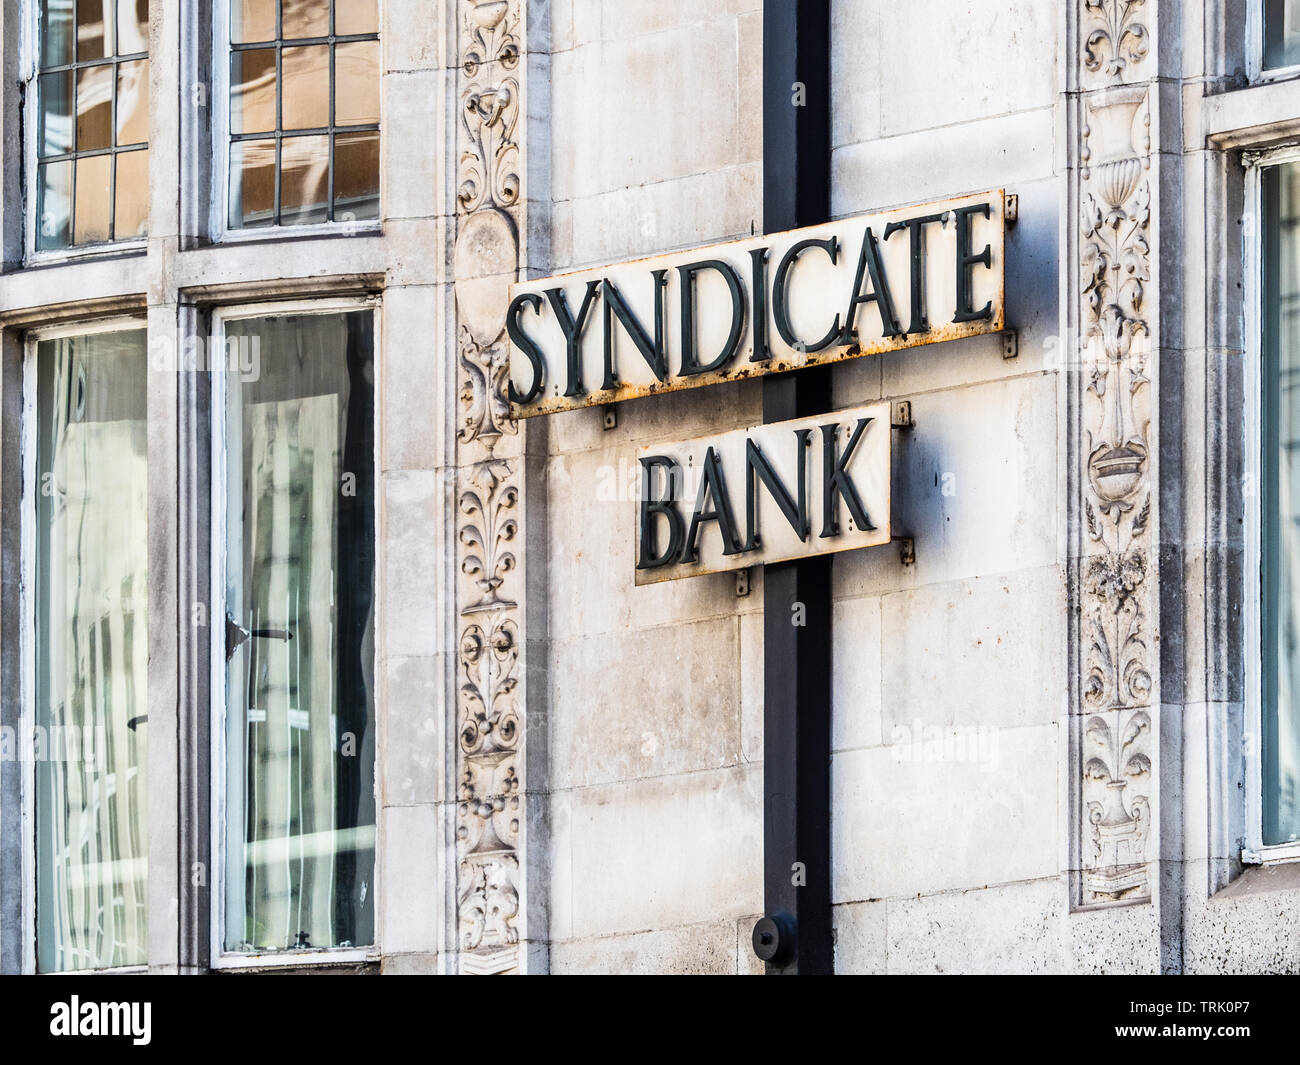 Syndicate Bank di Londra - la filiale di Londra di Syndicate Bank, uno dei più antichi e grandi banche commerciali di India fondata nel 1925. Foto Stock